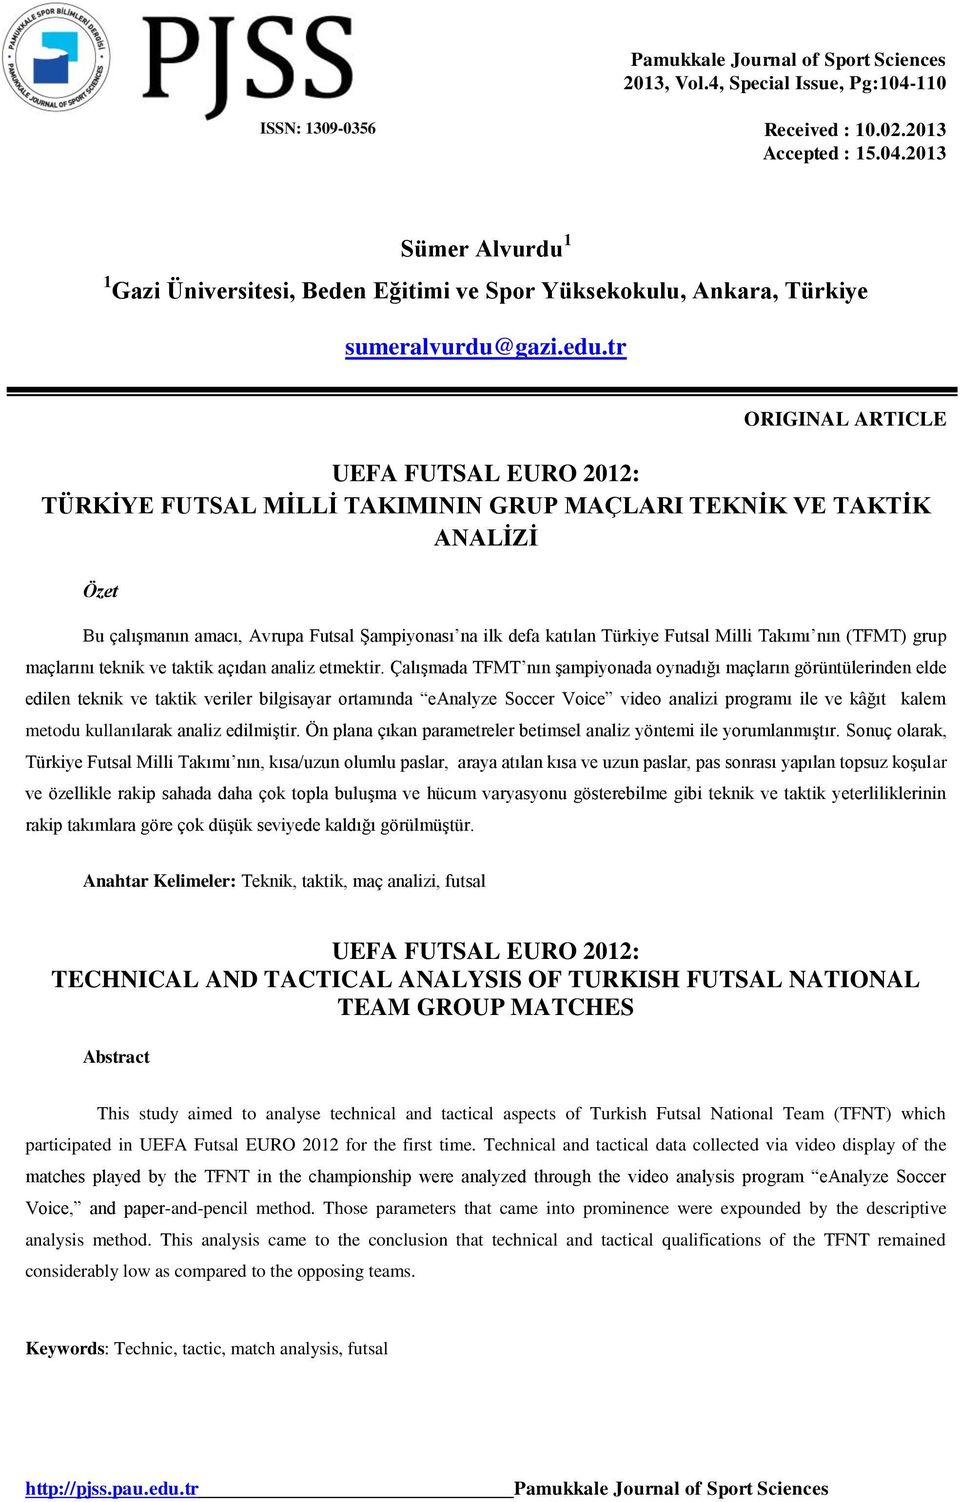 Futsal Milli Takımı nın (TFMT) grup maçlarını teknik ve taktik açıdan analiz etmektir.